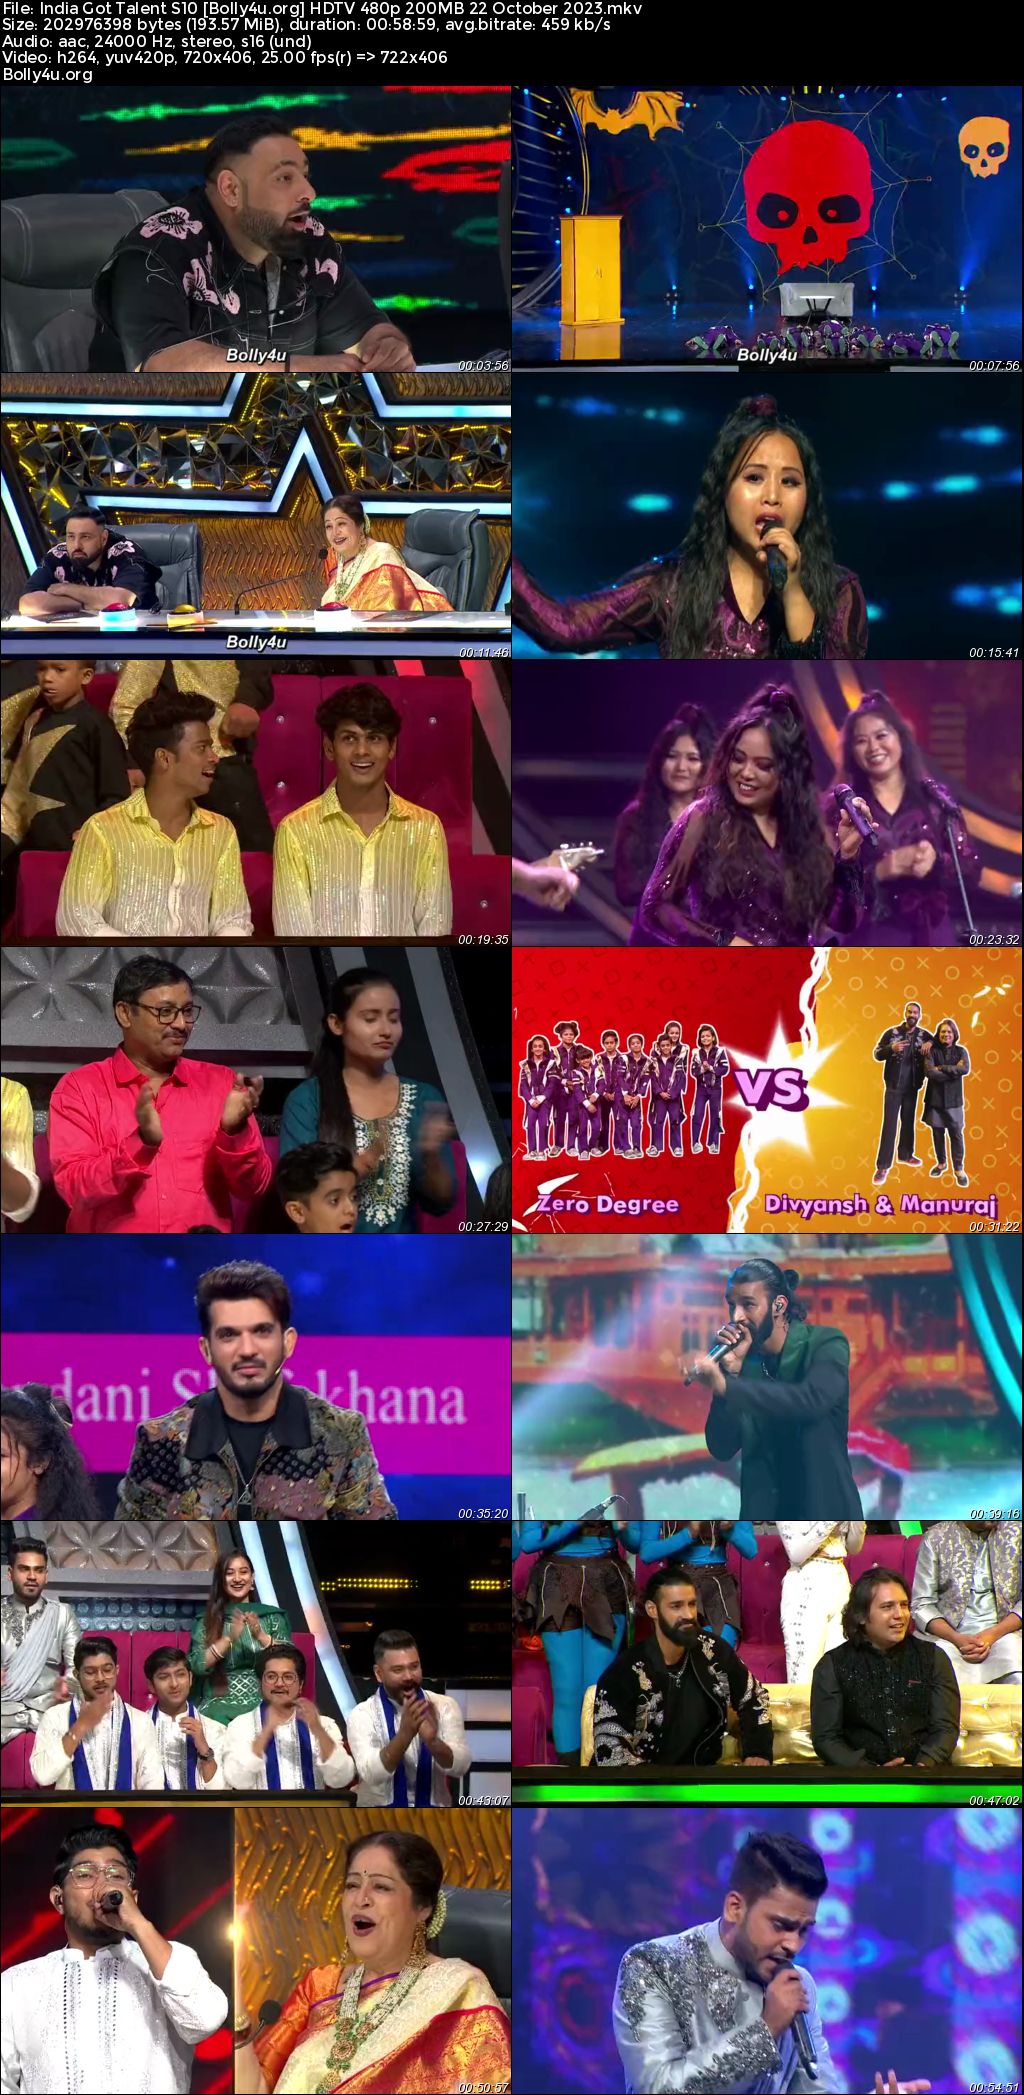 India Got Talent Season S10 HDTV 480p 200Mb 22 October 2023 Download